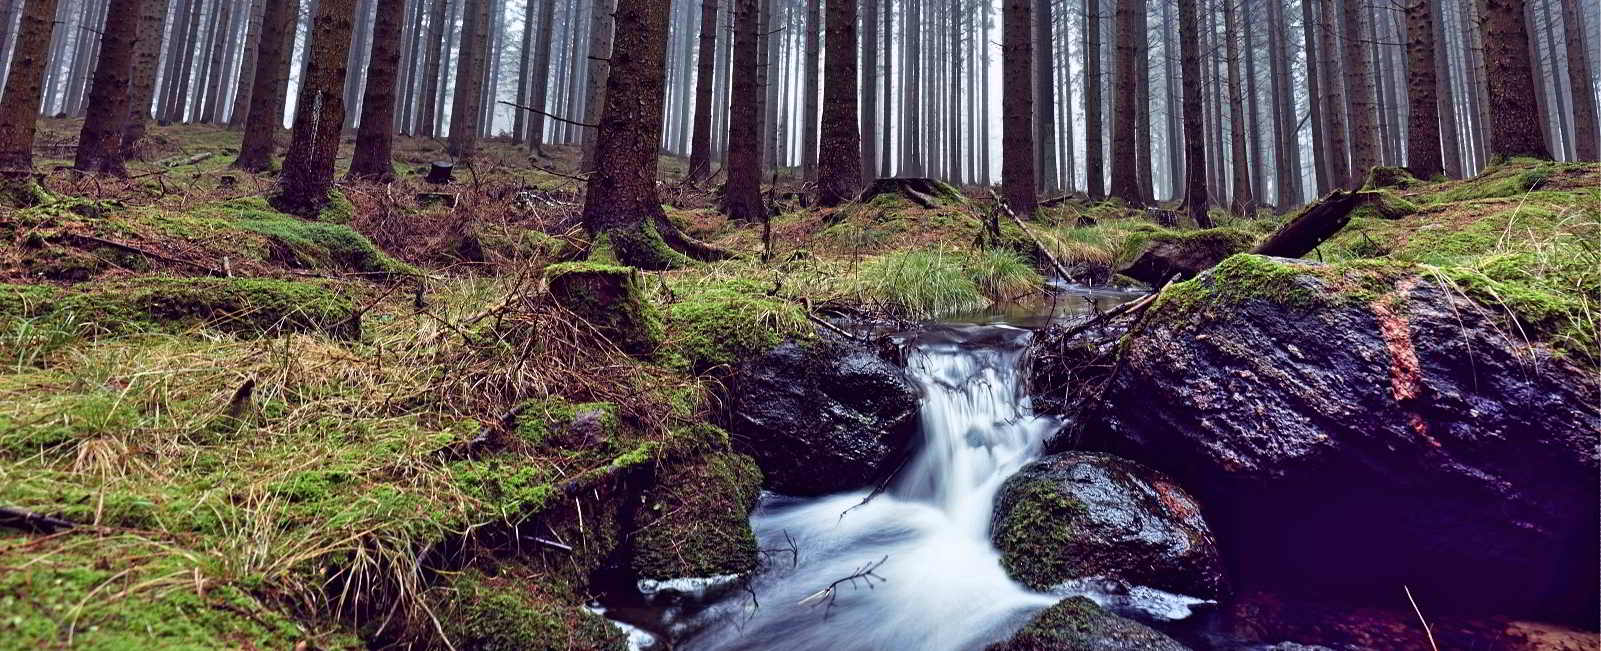 Almindingen to jeden z największych lasów w Danii. Fotografia